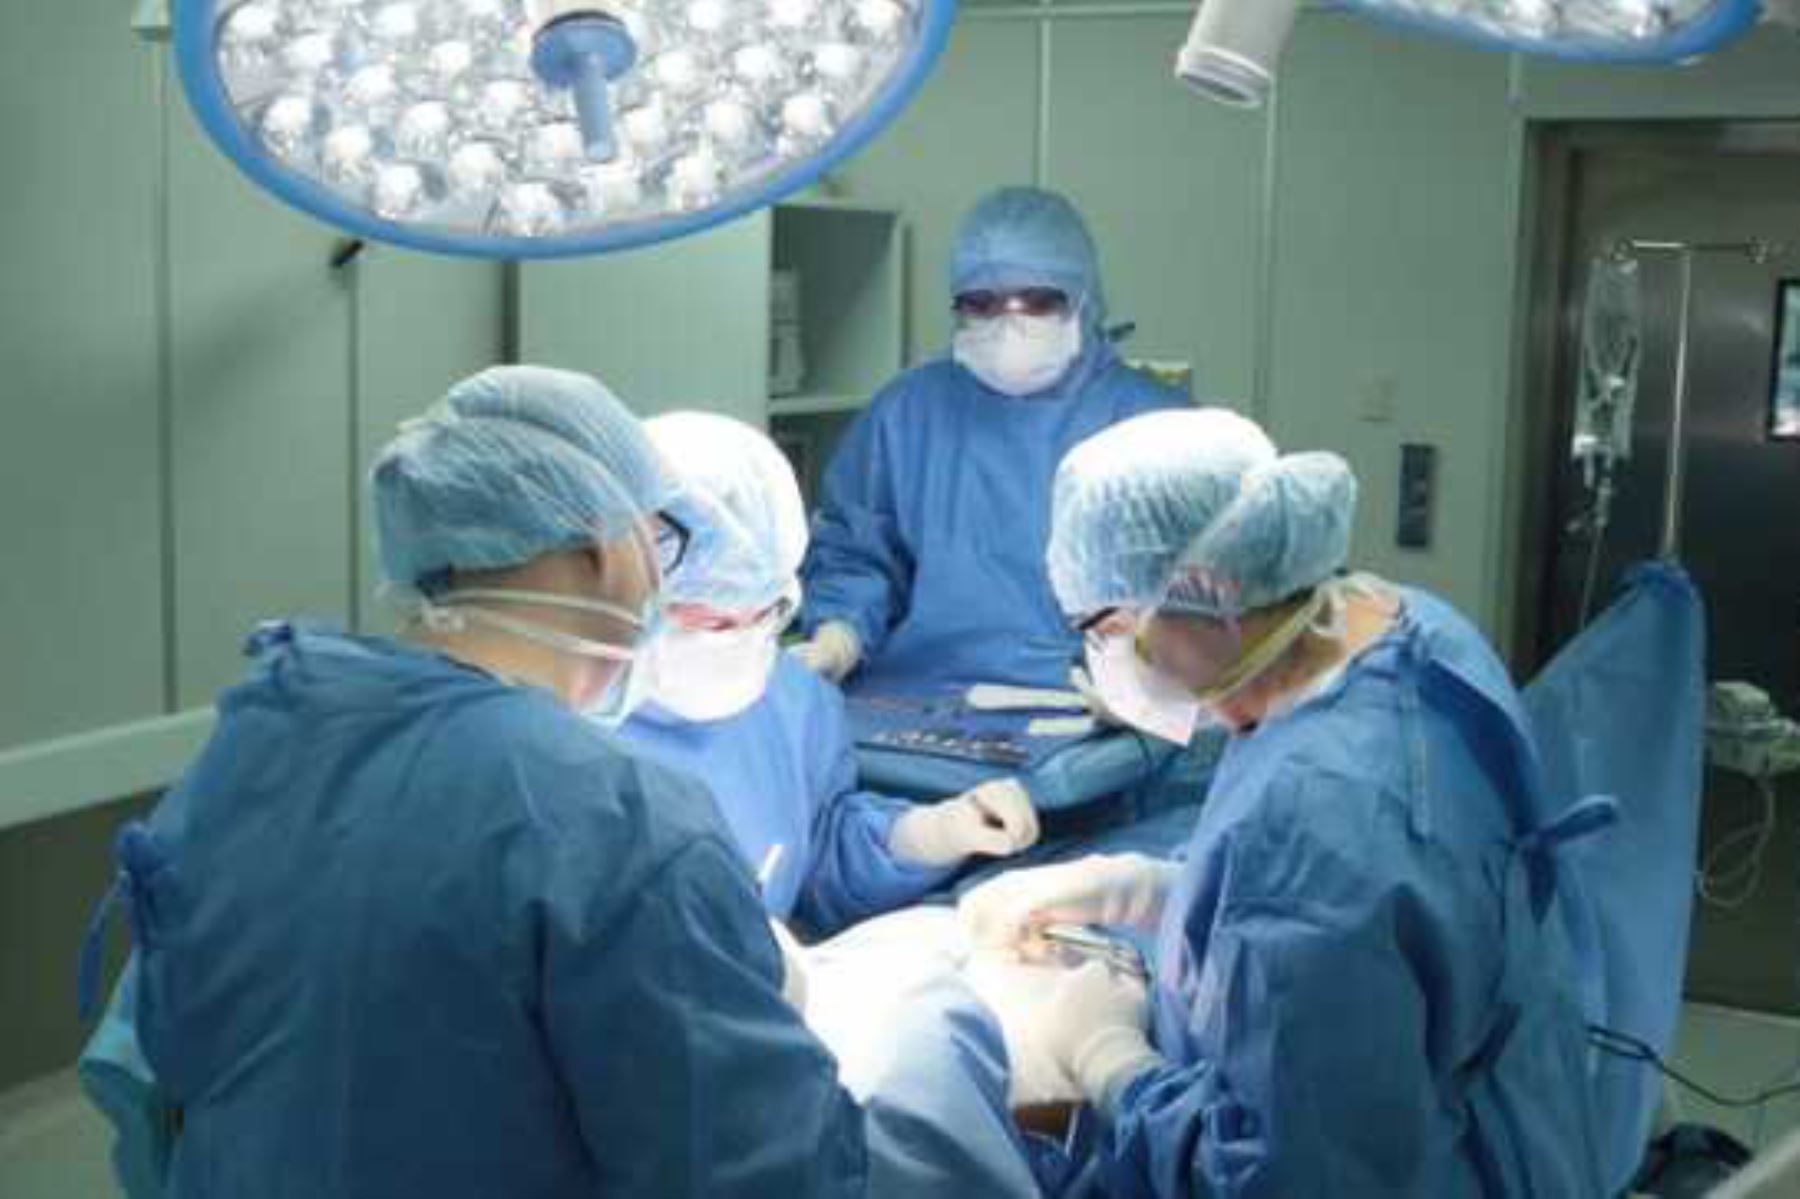 La técnica de transposición uterina es un procedimiento que se aplica mediante una cirugía laparoscópica que permite el traslado temporal del útero y los ovarios hacia la parte superior del abdomen, con el objetivo de preservar la capacidad reproductora de la mujer. Foto: ANDINA/INEN